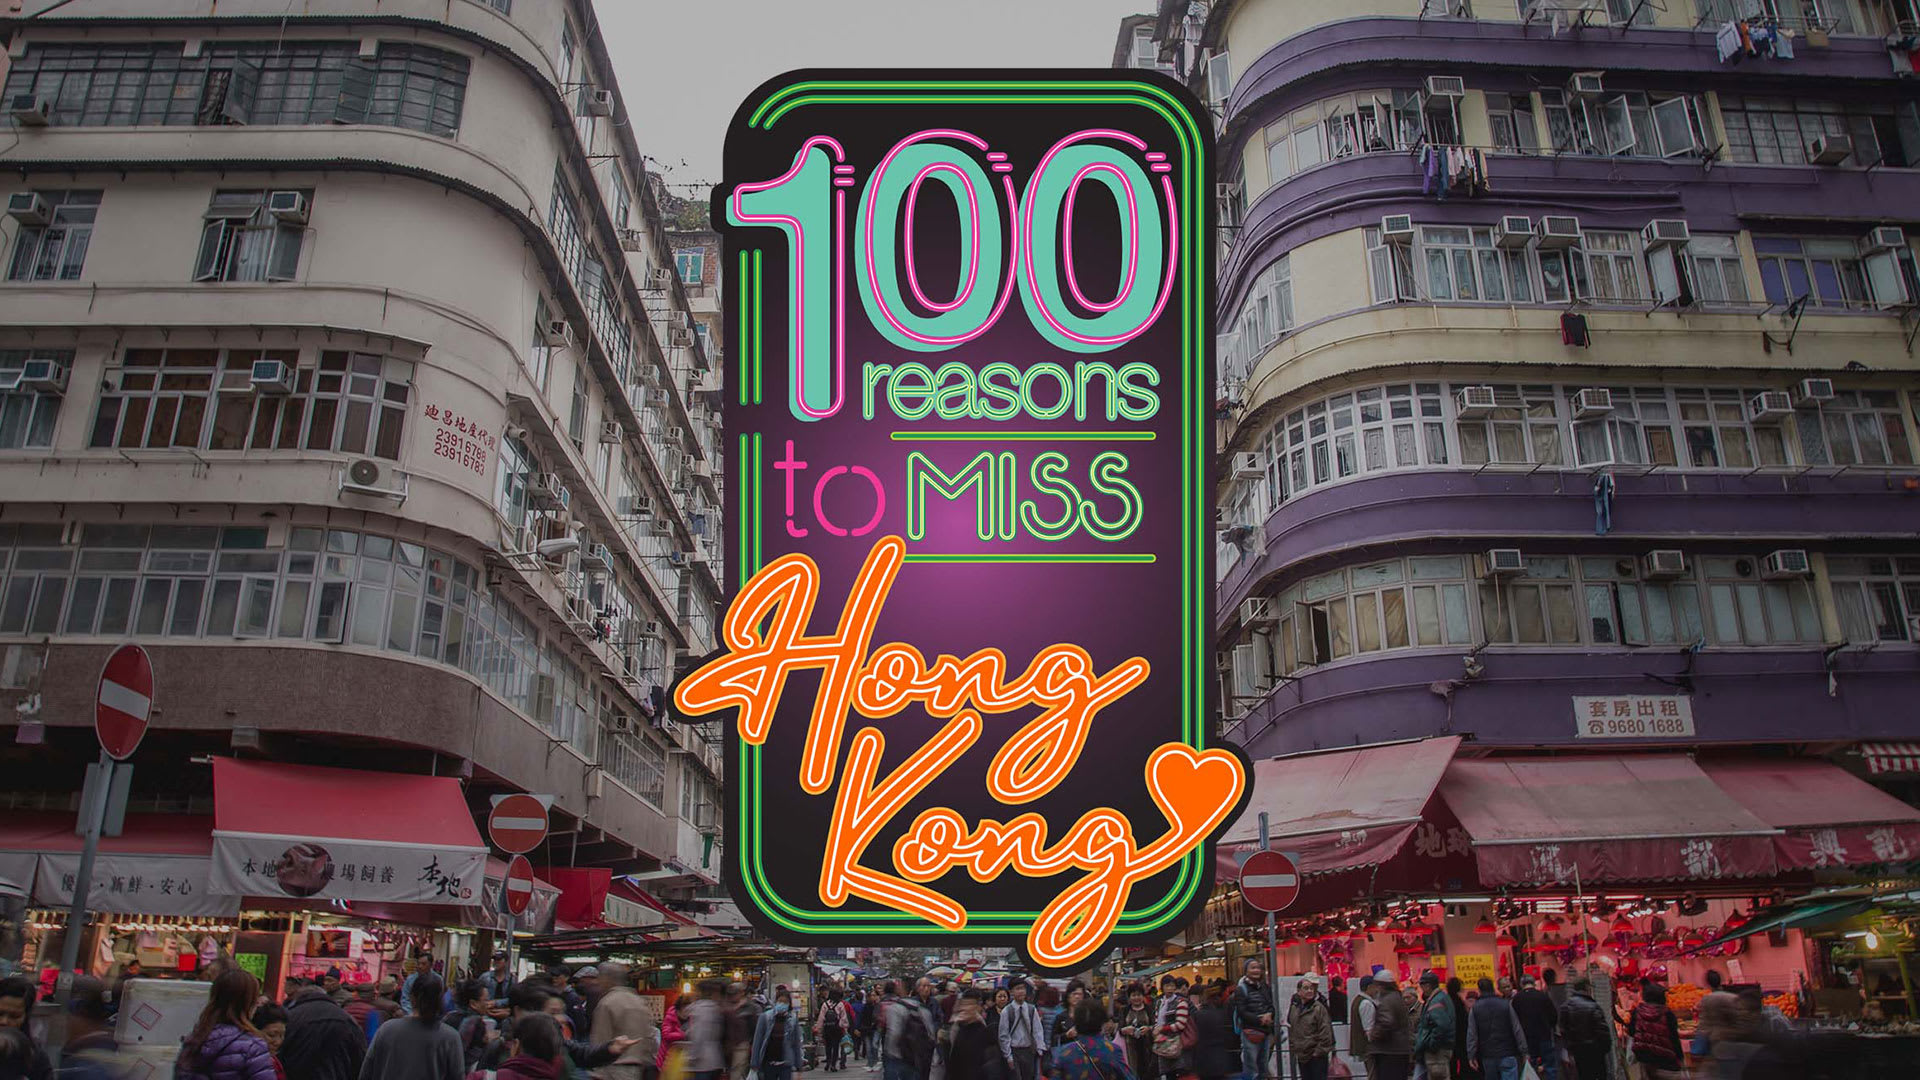 miss hong kong 100 reasons 1920x1080 data